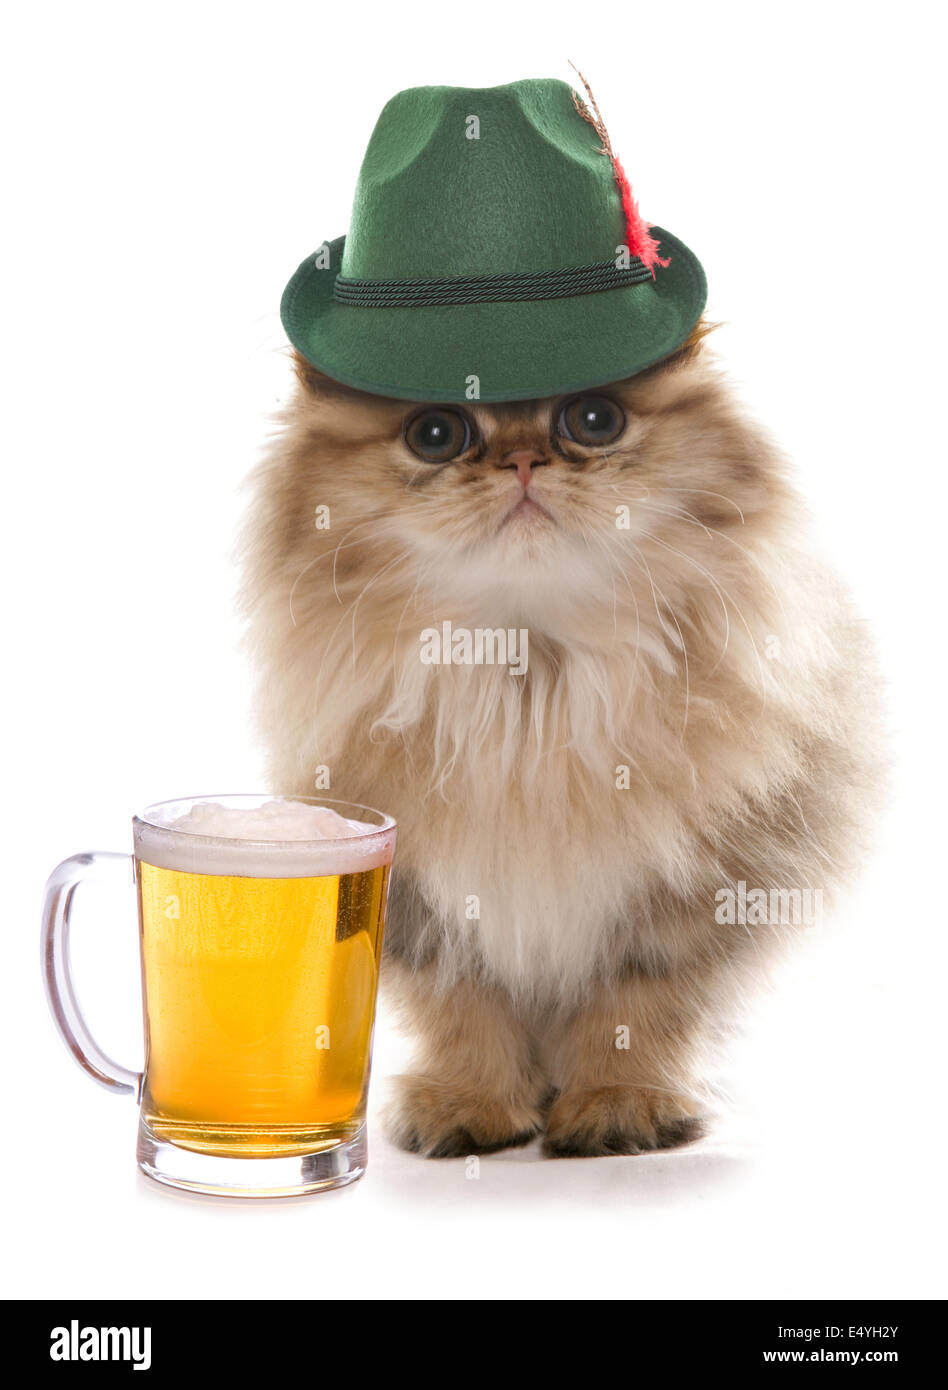 Gatto persiano indossando la birra bavarese festival hat Foto Stock